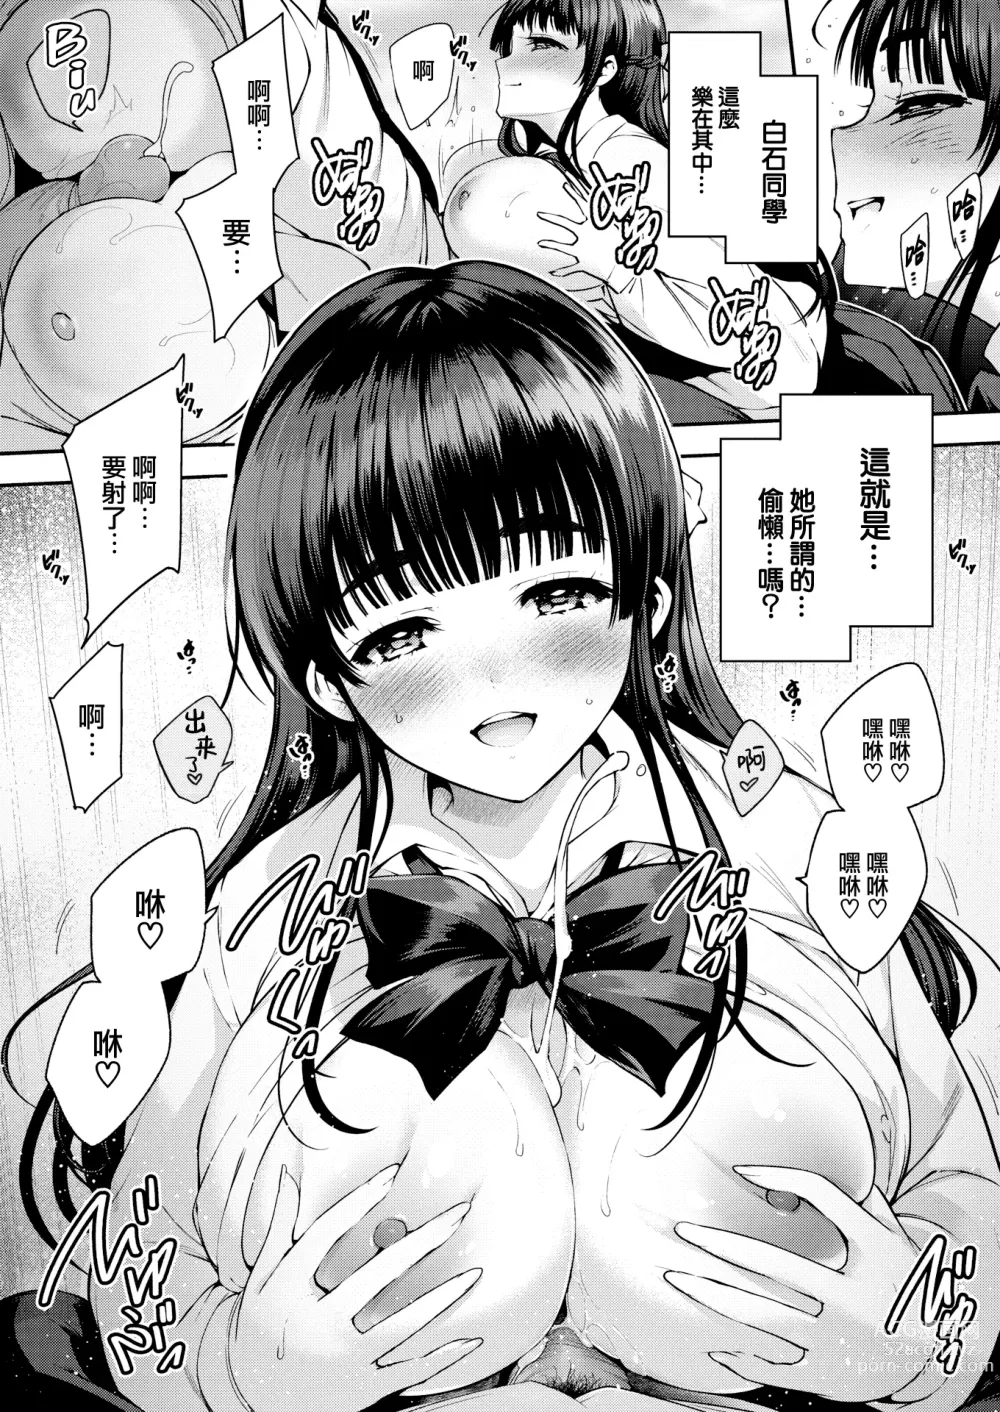 Page 10 of manga Aoi Sora no Mashita de